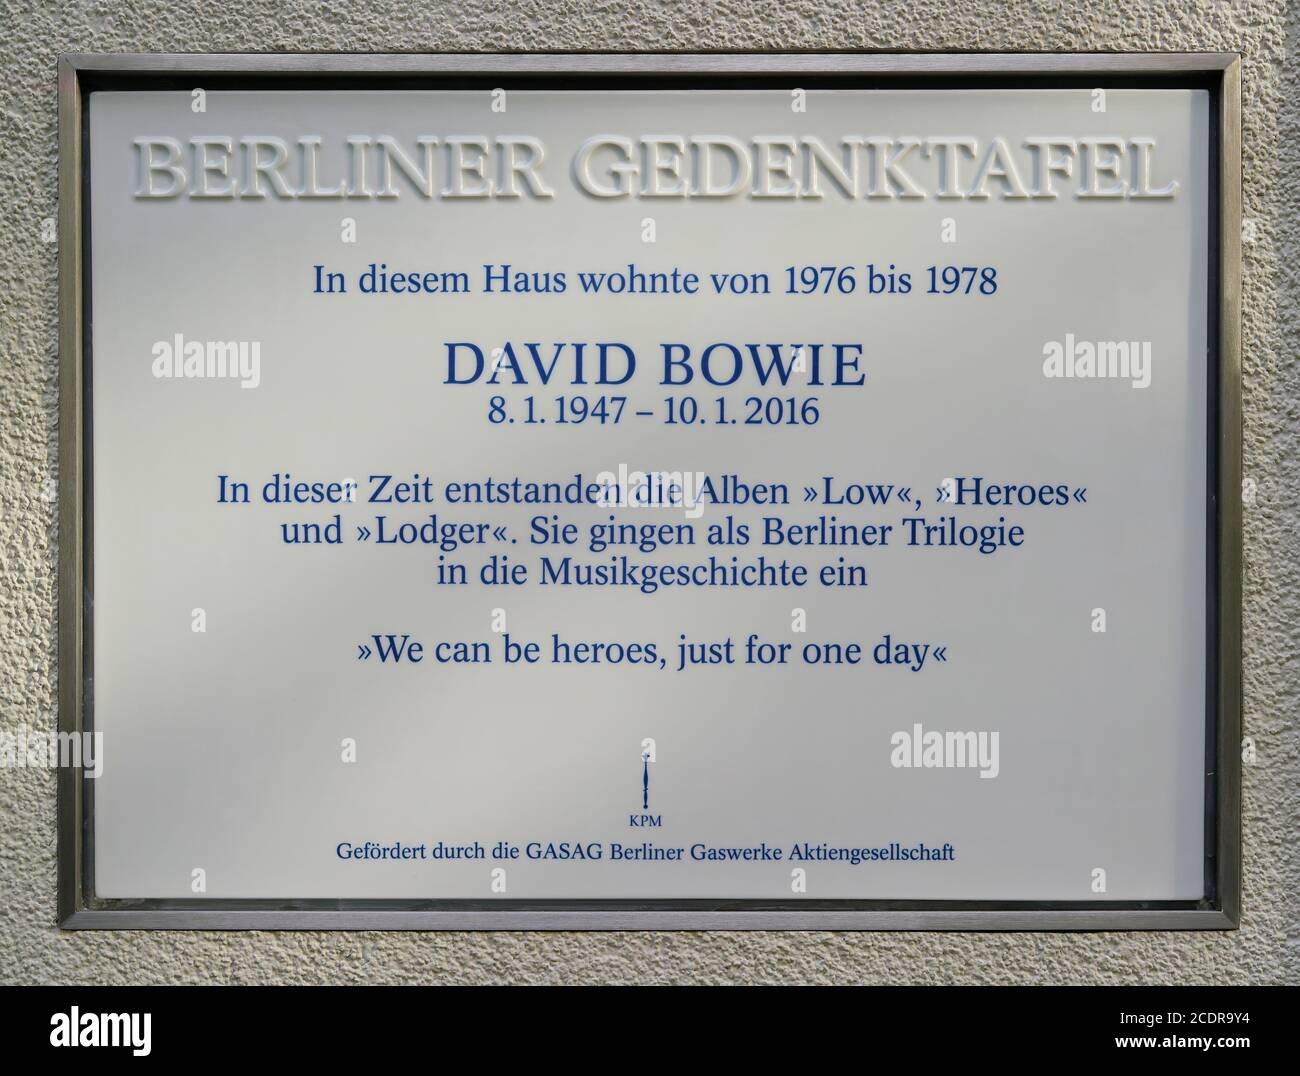 Lapide commemorativa a David Bowie nella sua ex casa in Berlino Schoeneberg Foto Stock